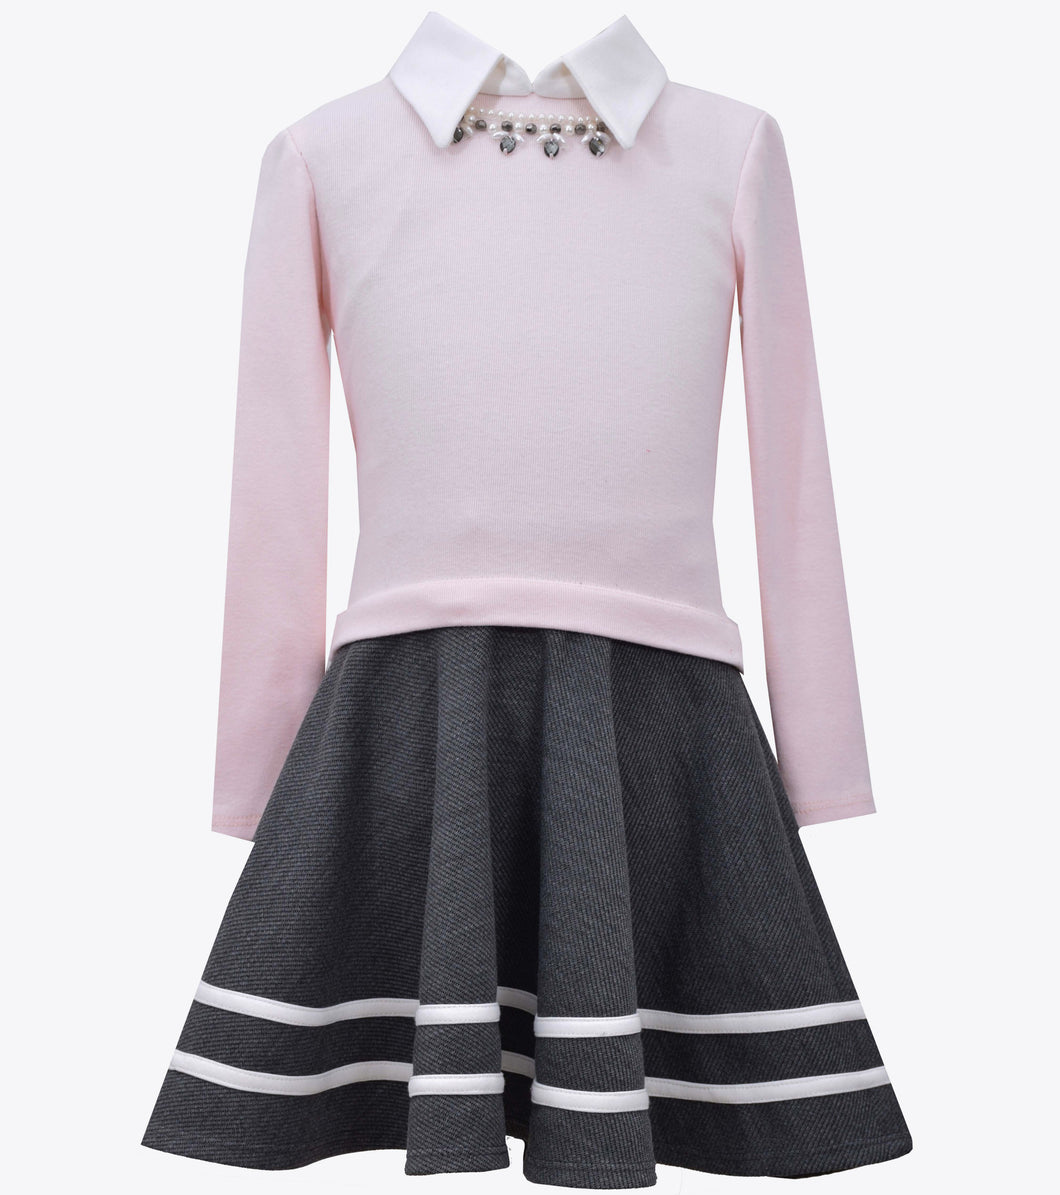 Bonnie Jean pink and gray drop waist twill skirt dress